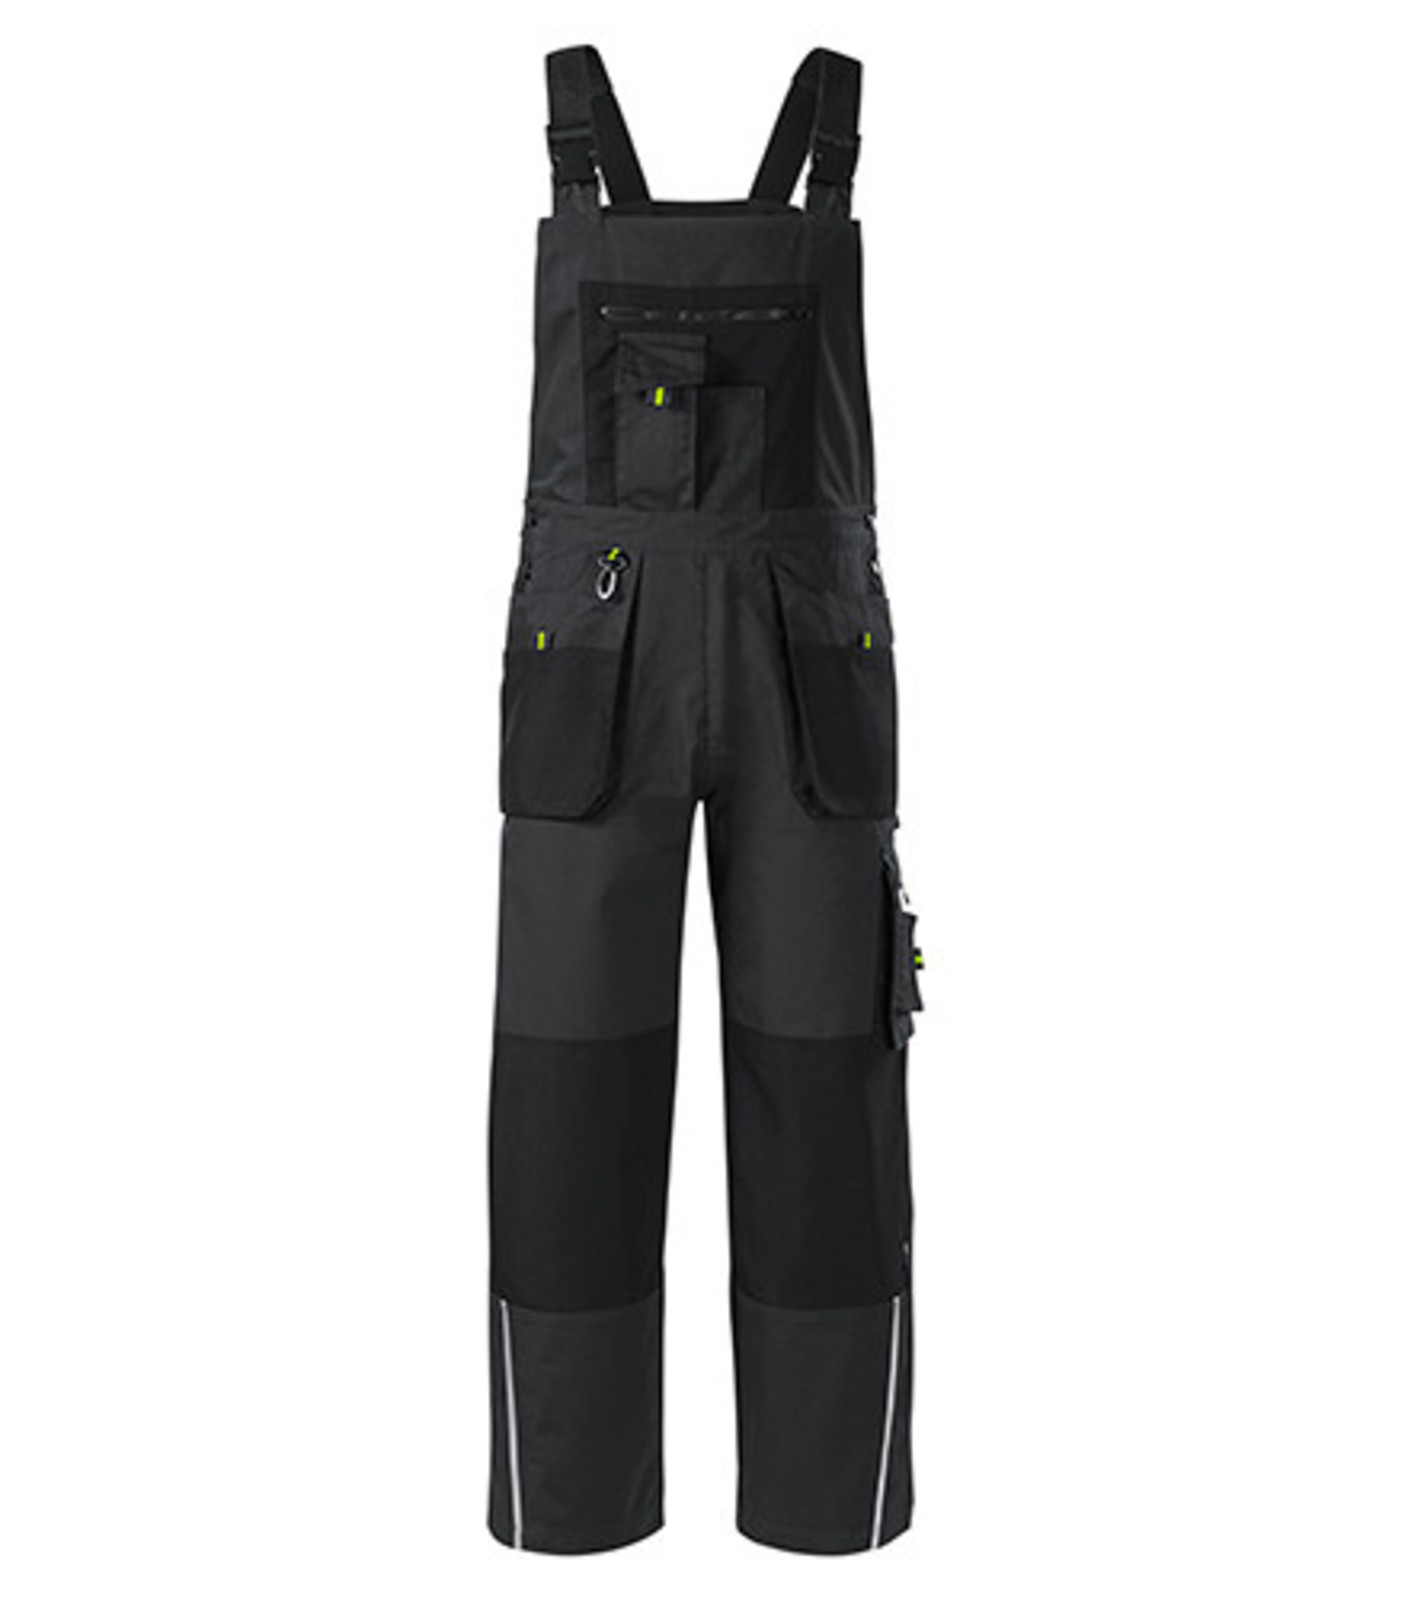 Montérkové nohavice s náprsenkou Adler Ranger W04 - veľkosť: 52-54, farba: šedá ebony